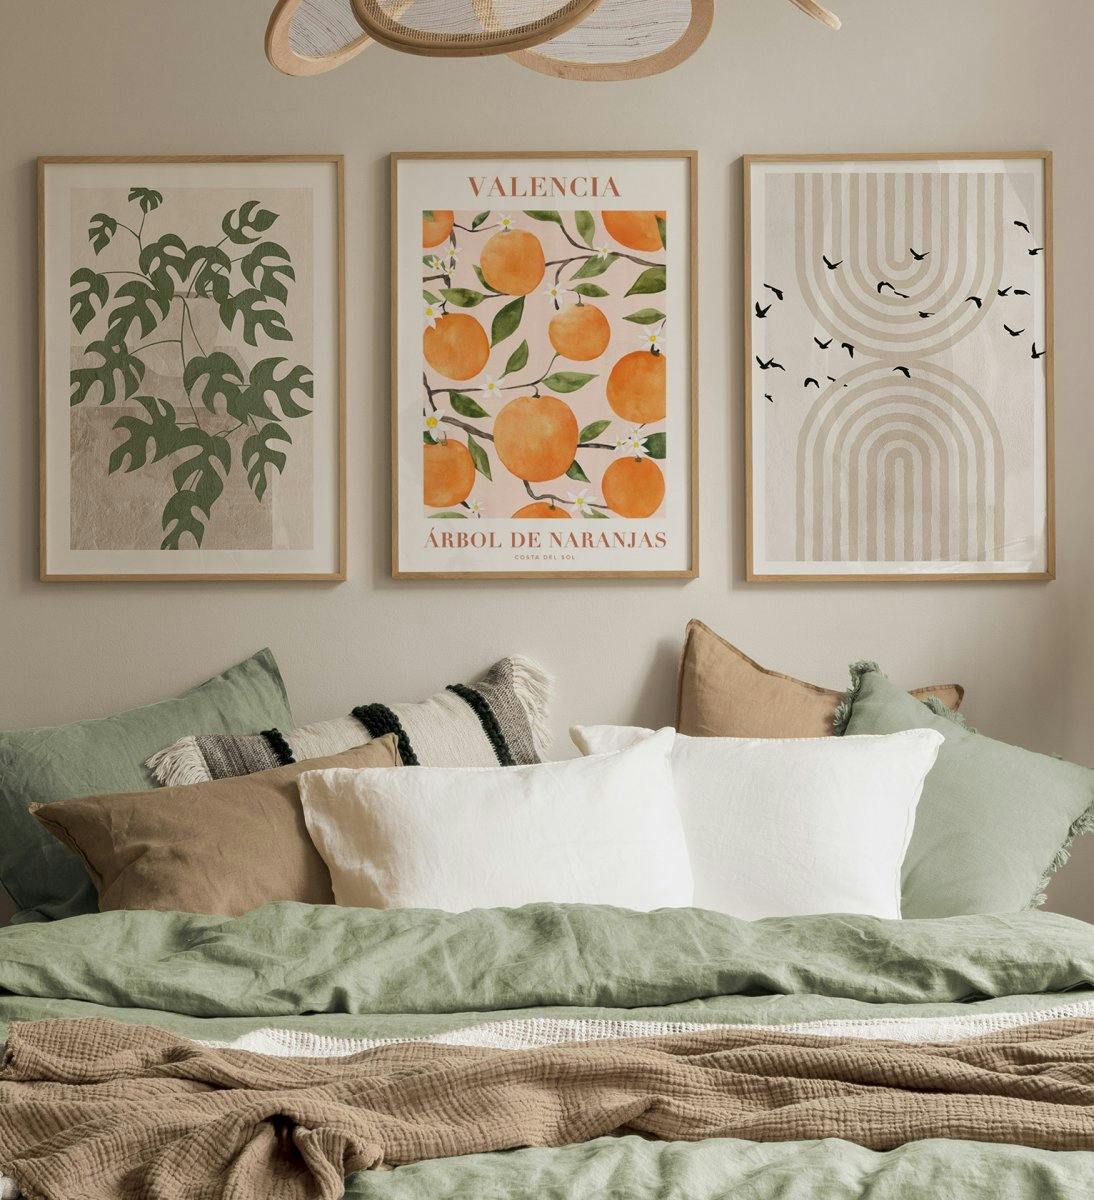 جدار معرض توضيحي مع عناصر من الرسومات والفاكهة والطبيعة يطبع مع إطارات البلوط لغرفة النوم